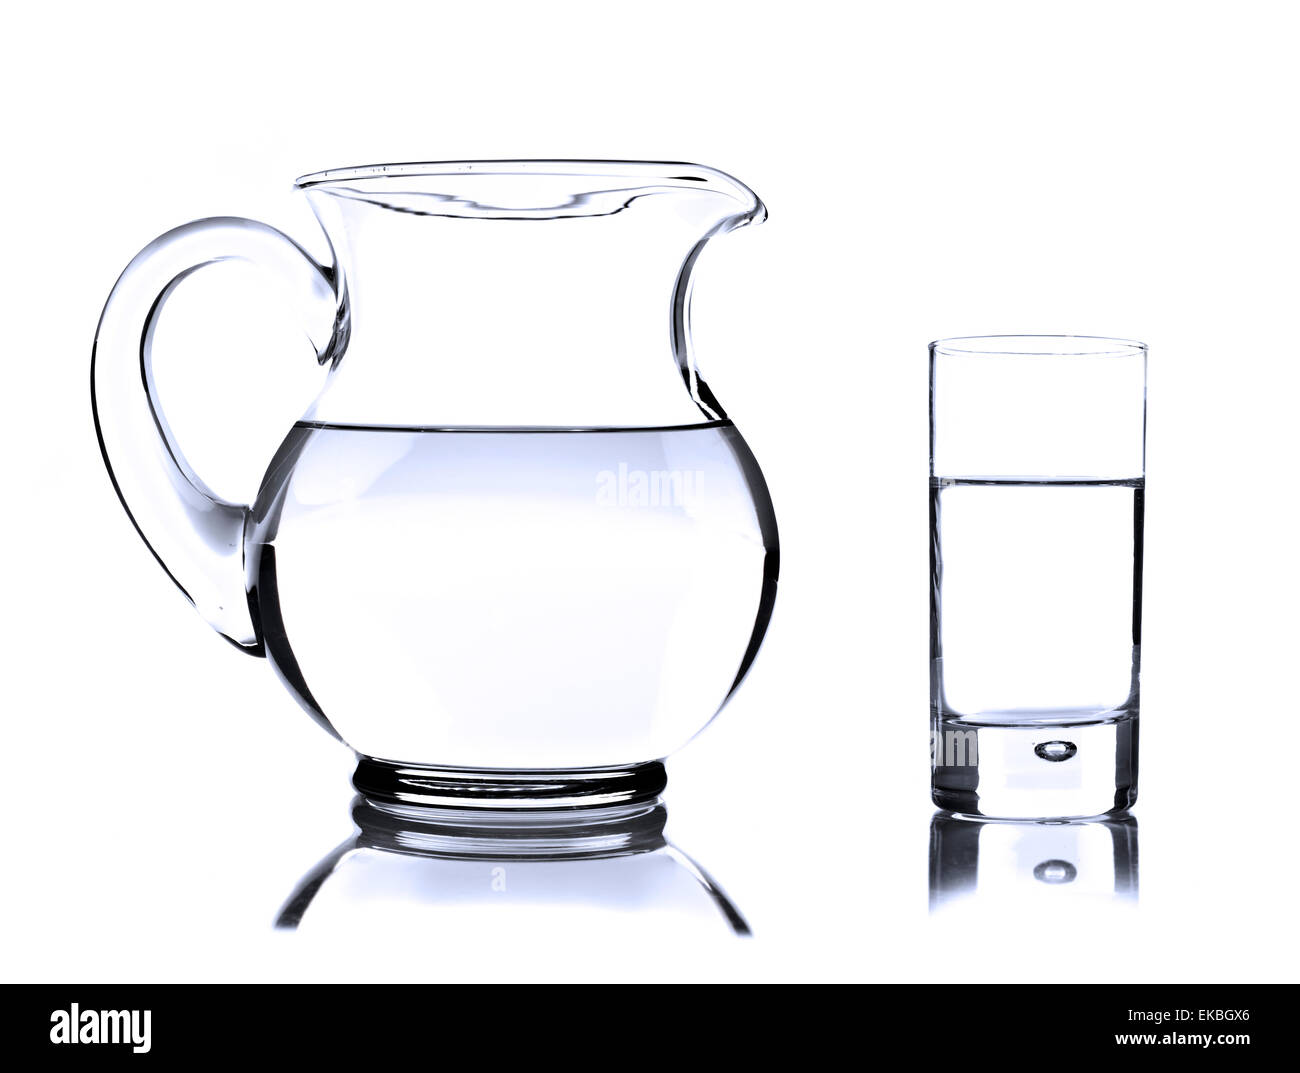 jarra de vidrio con agua 1740786 Foto de stock en Vecteezy